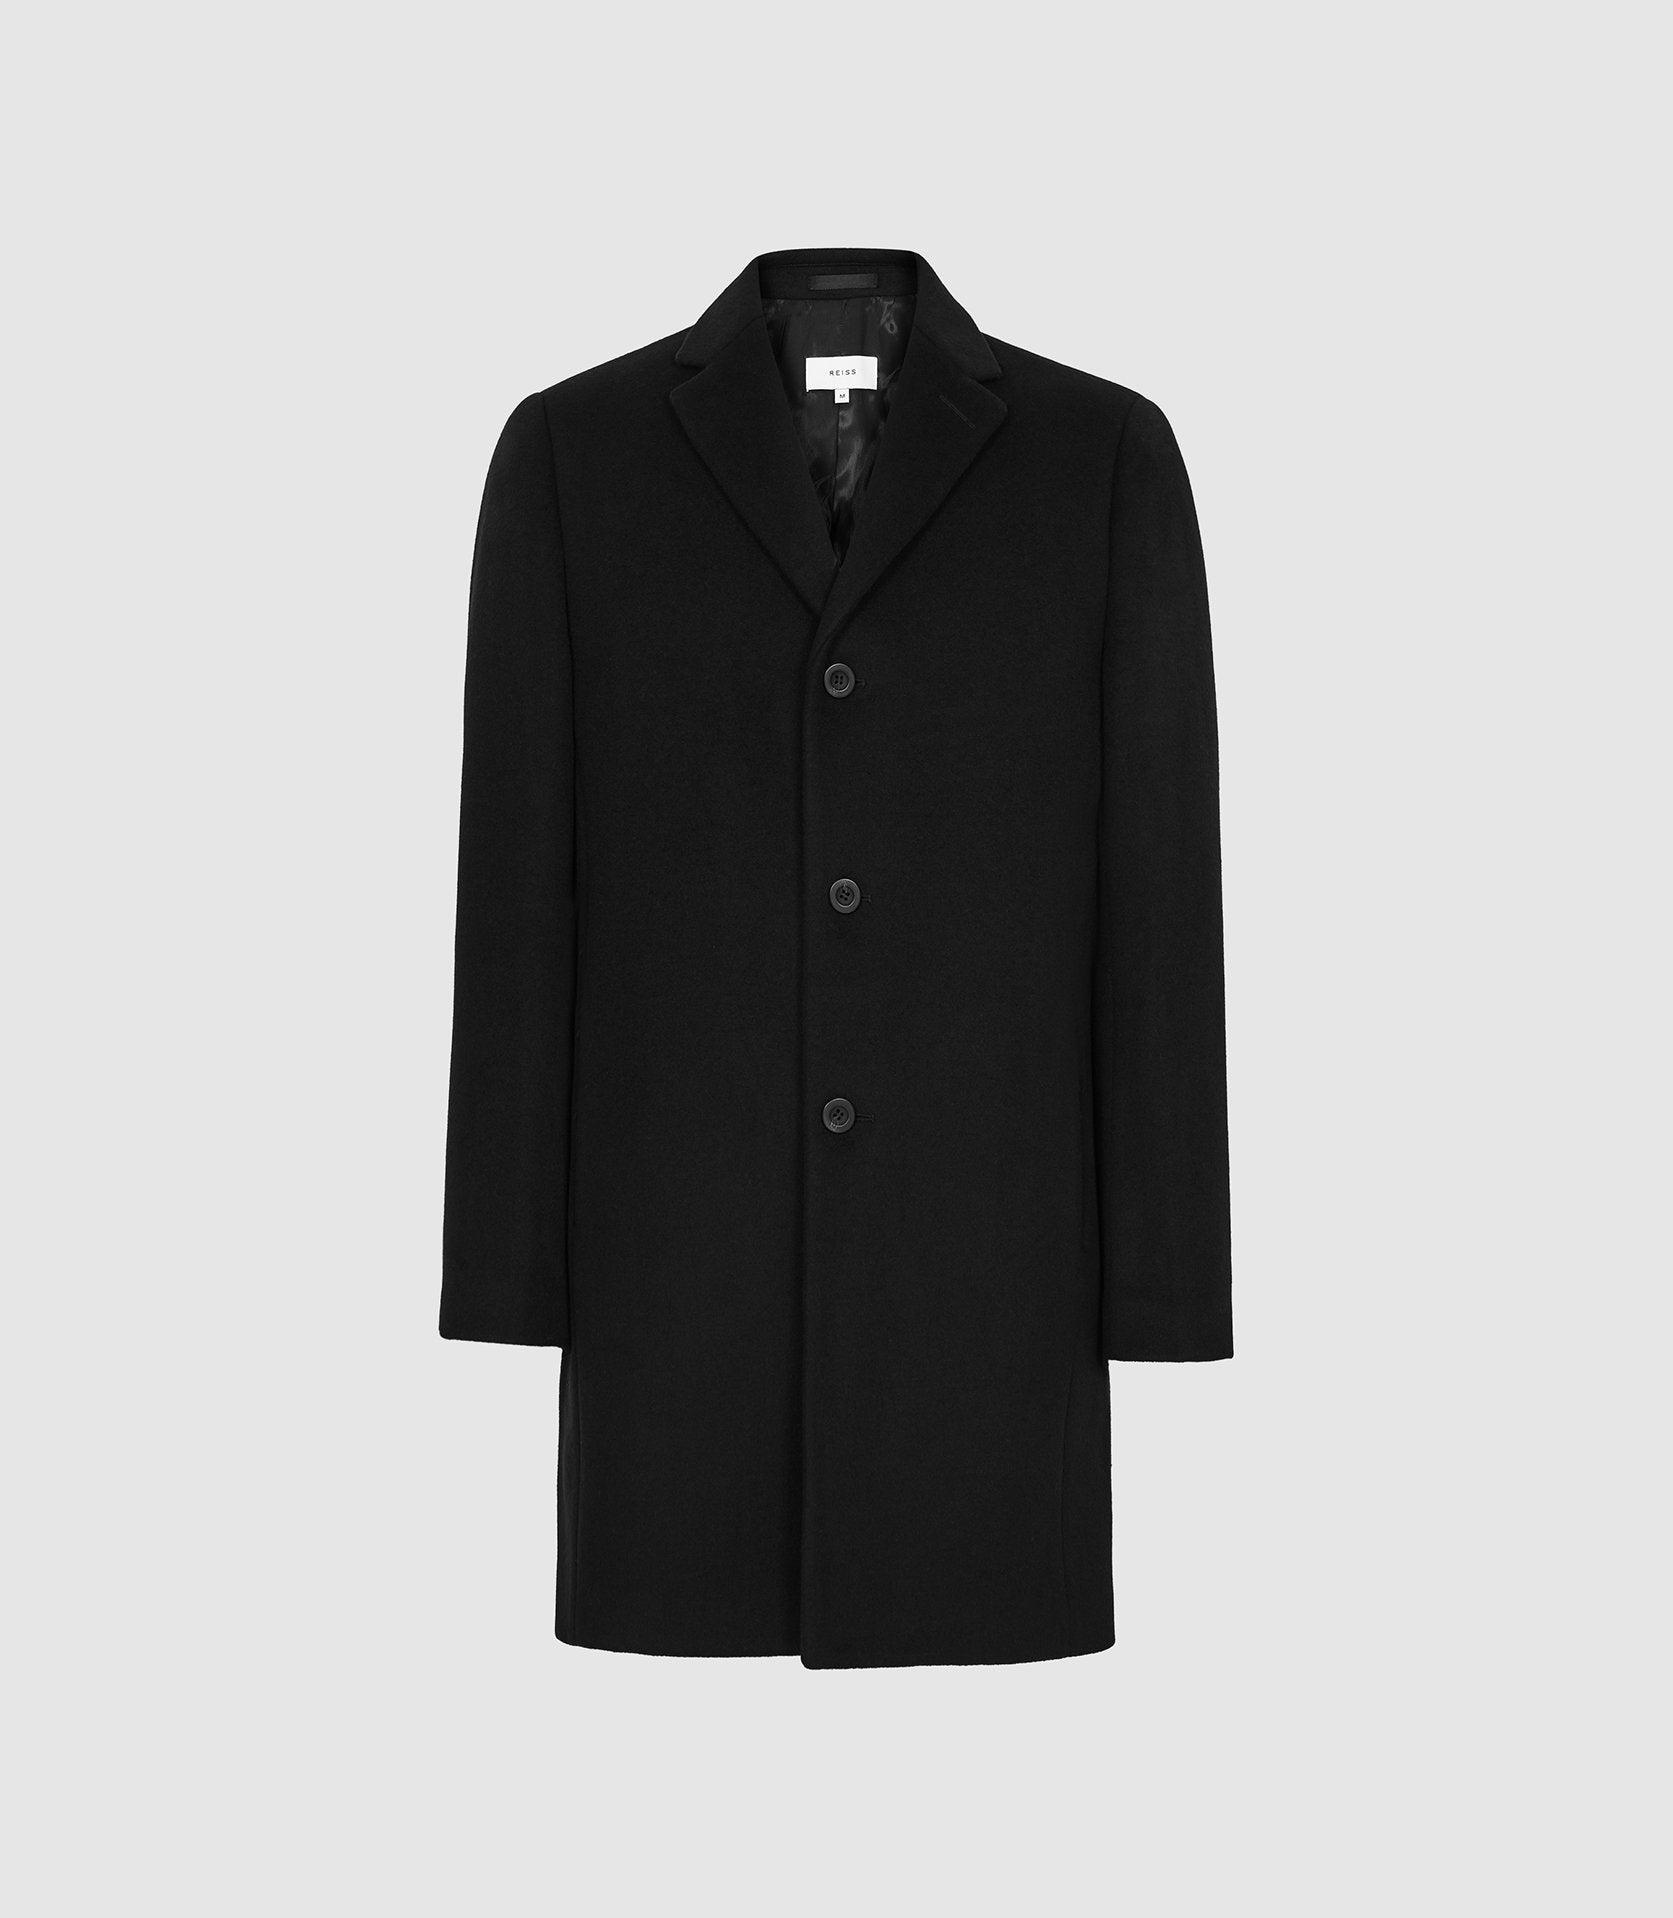 Reiss Wool Epsom Overcoat in Black for Men - Lyst